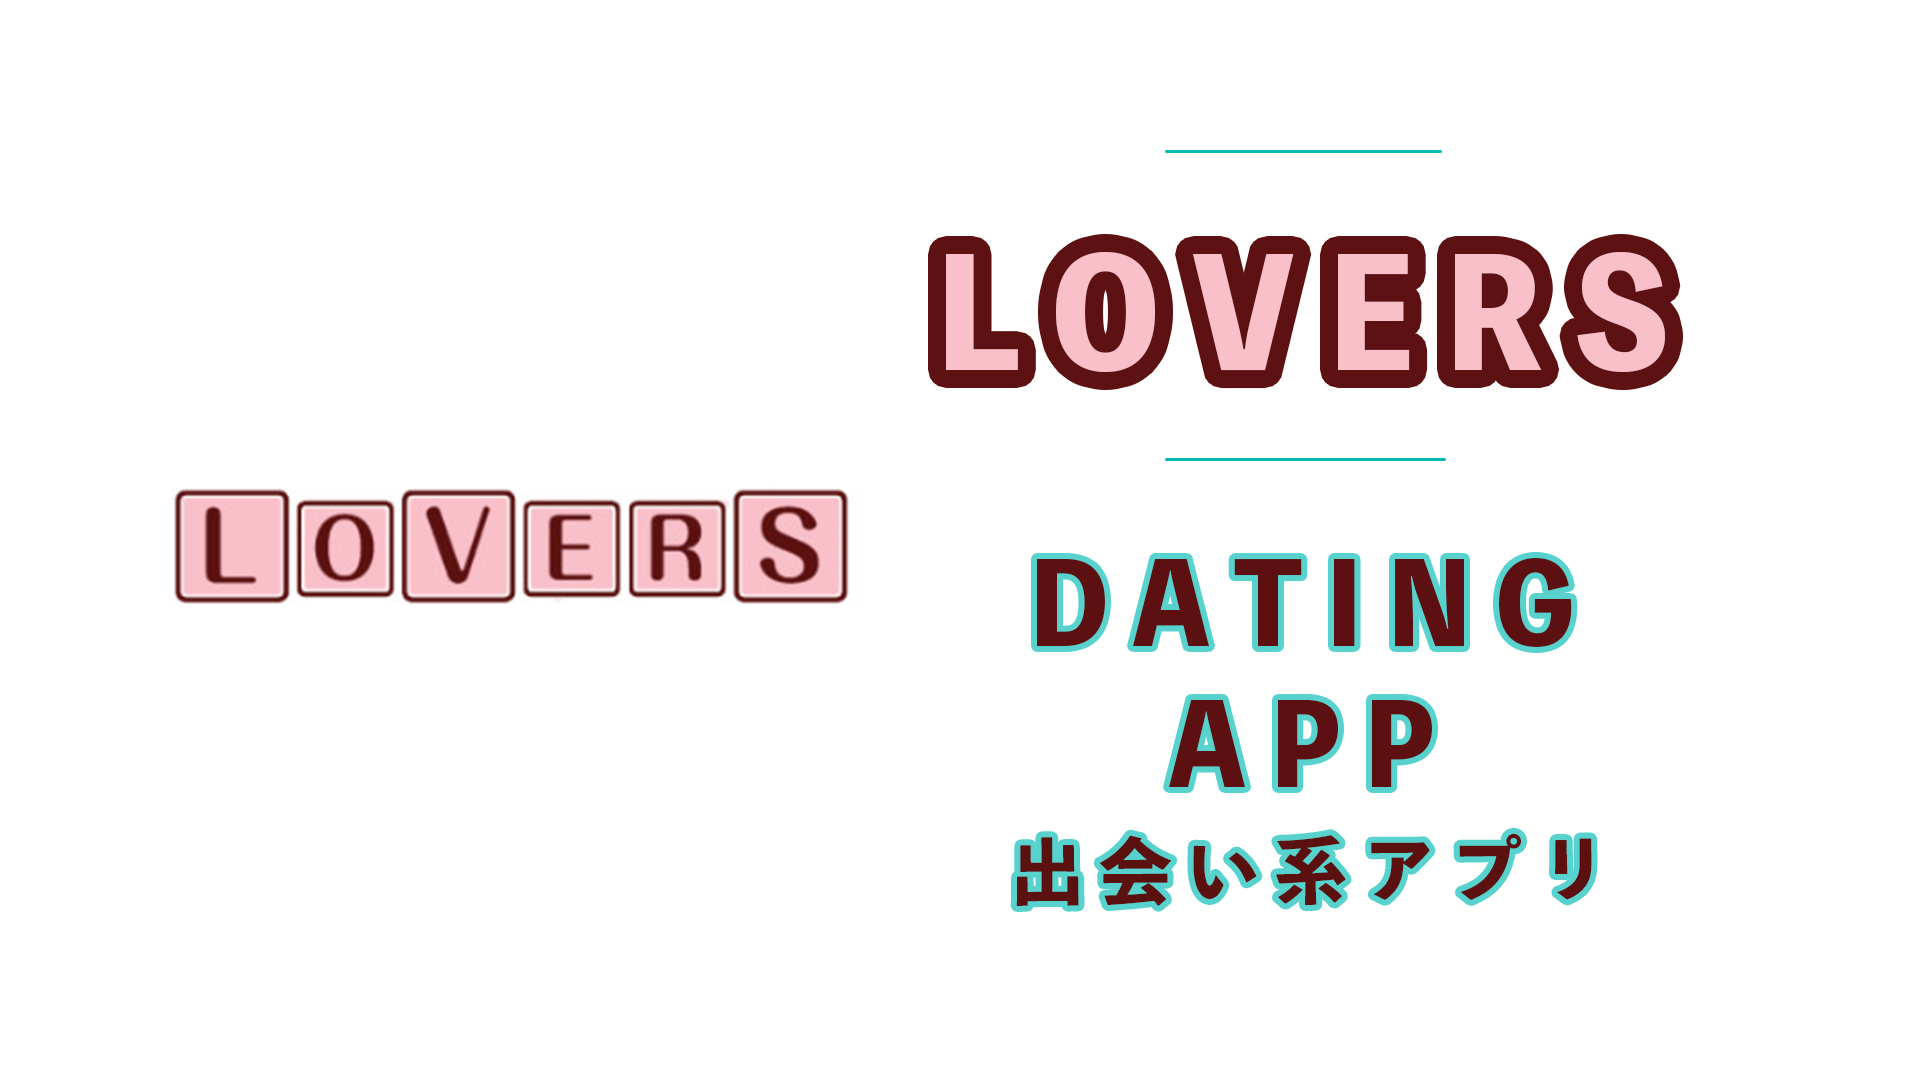 LOVERSの出会い系アプリとしてヤバイ！セフレが出来るとか以前と評価